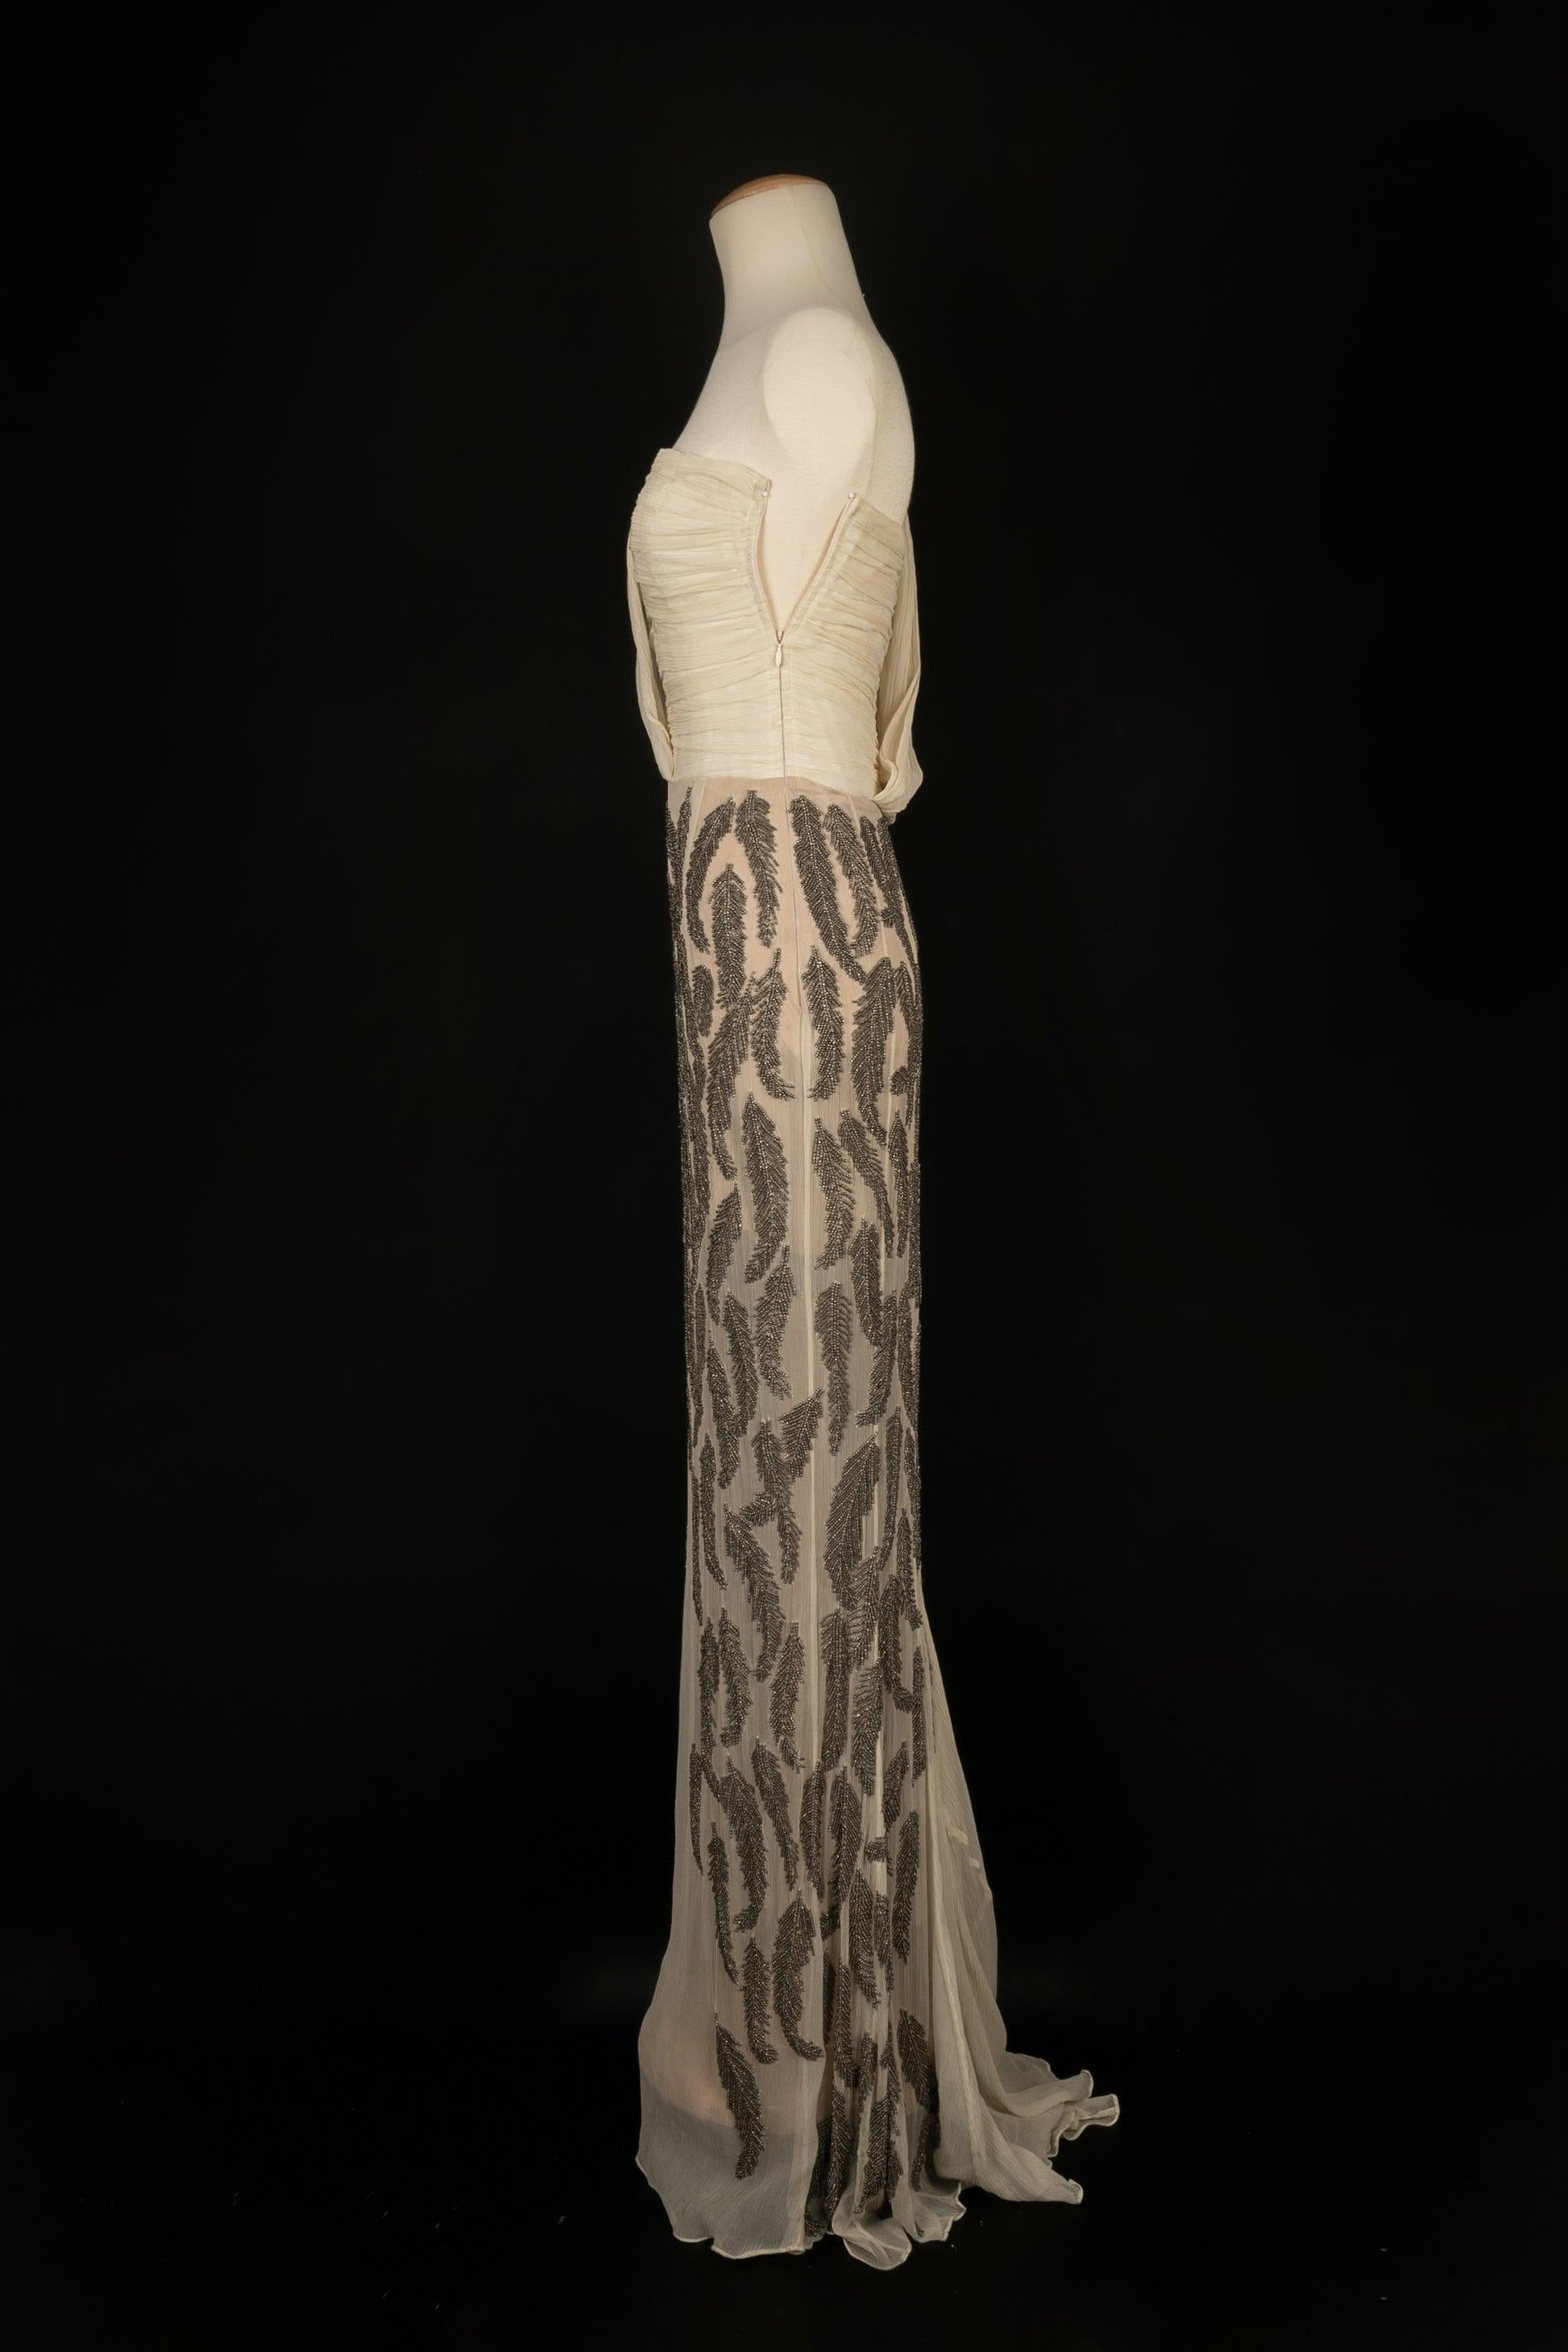 Cher Michel Klein - Robe plissée brodée de perles grises avec une courte traîne dans le dos. Taille 36FR.

Informations complémentaires :
Condit : Très bon état.
Dimensions : Poitrine : 48 cm - Taille : 33 cm - Longueur : de 150 cm à 170